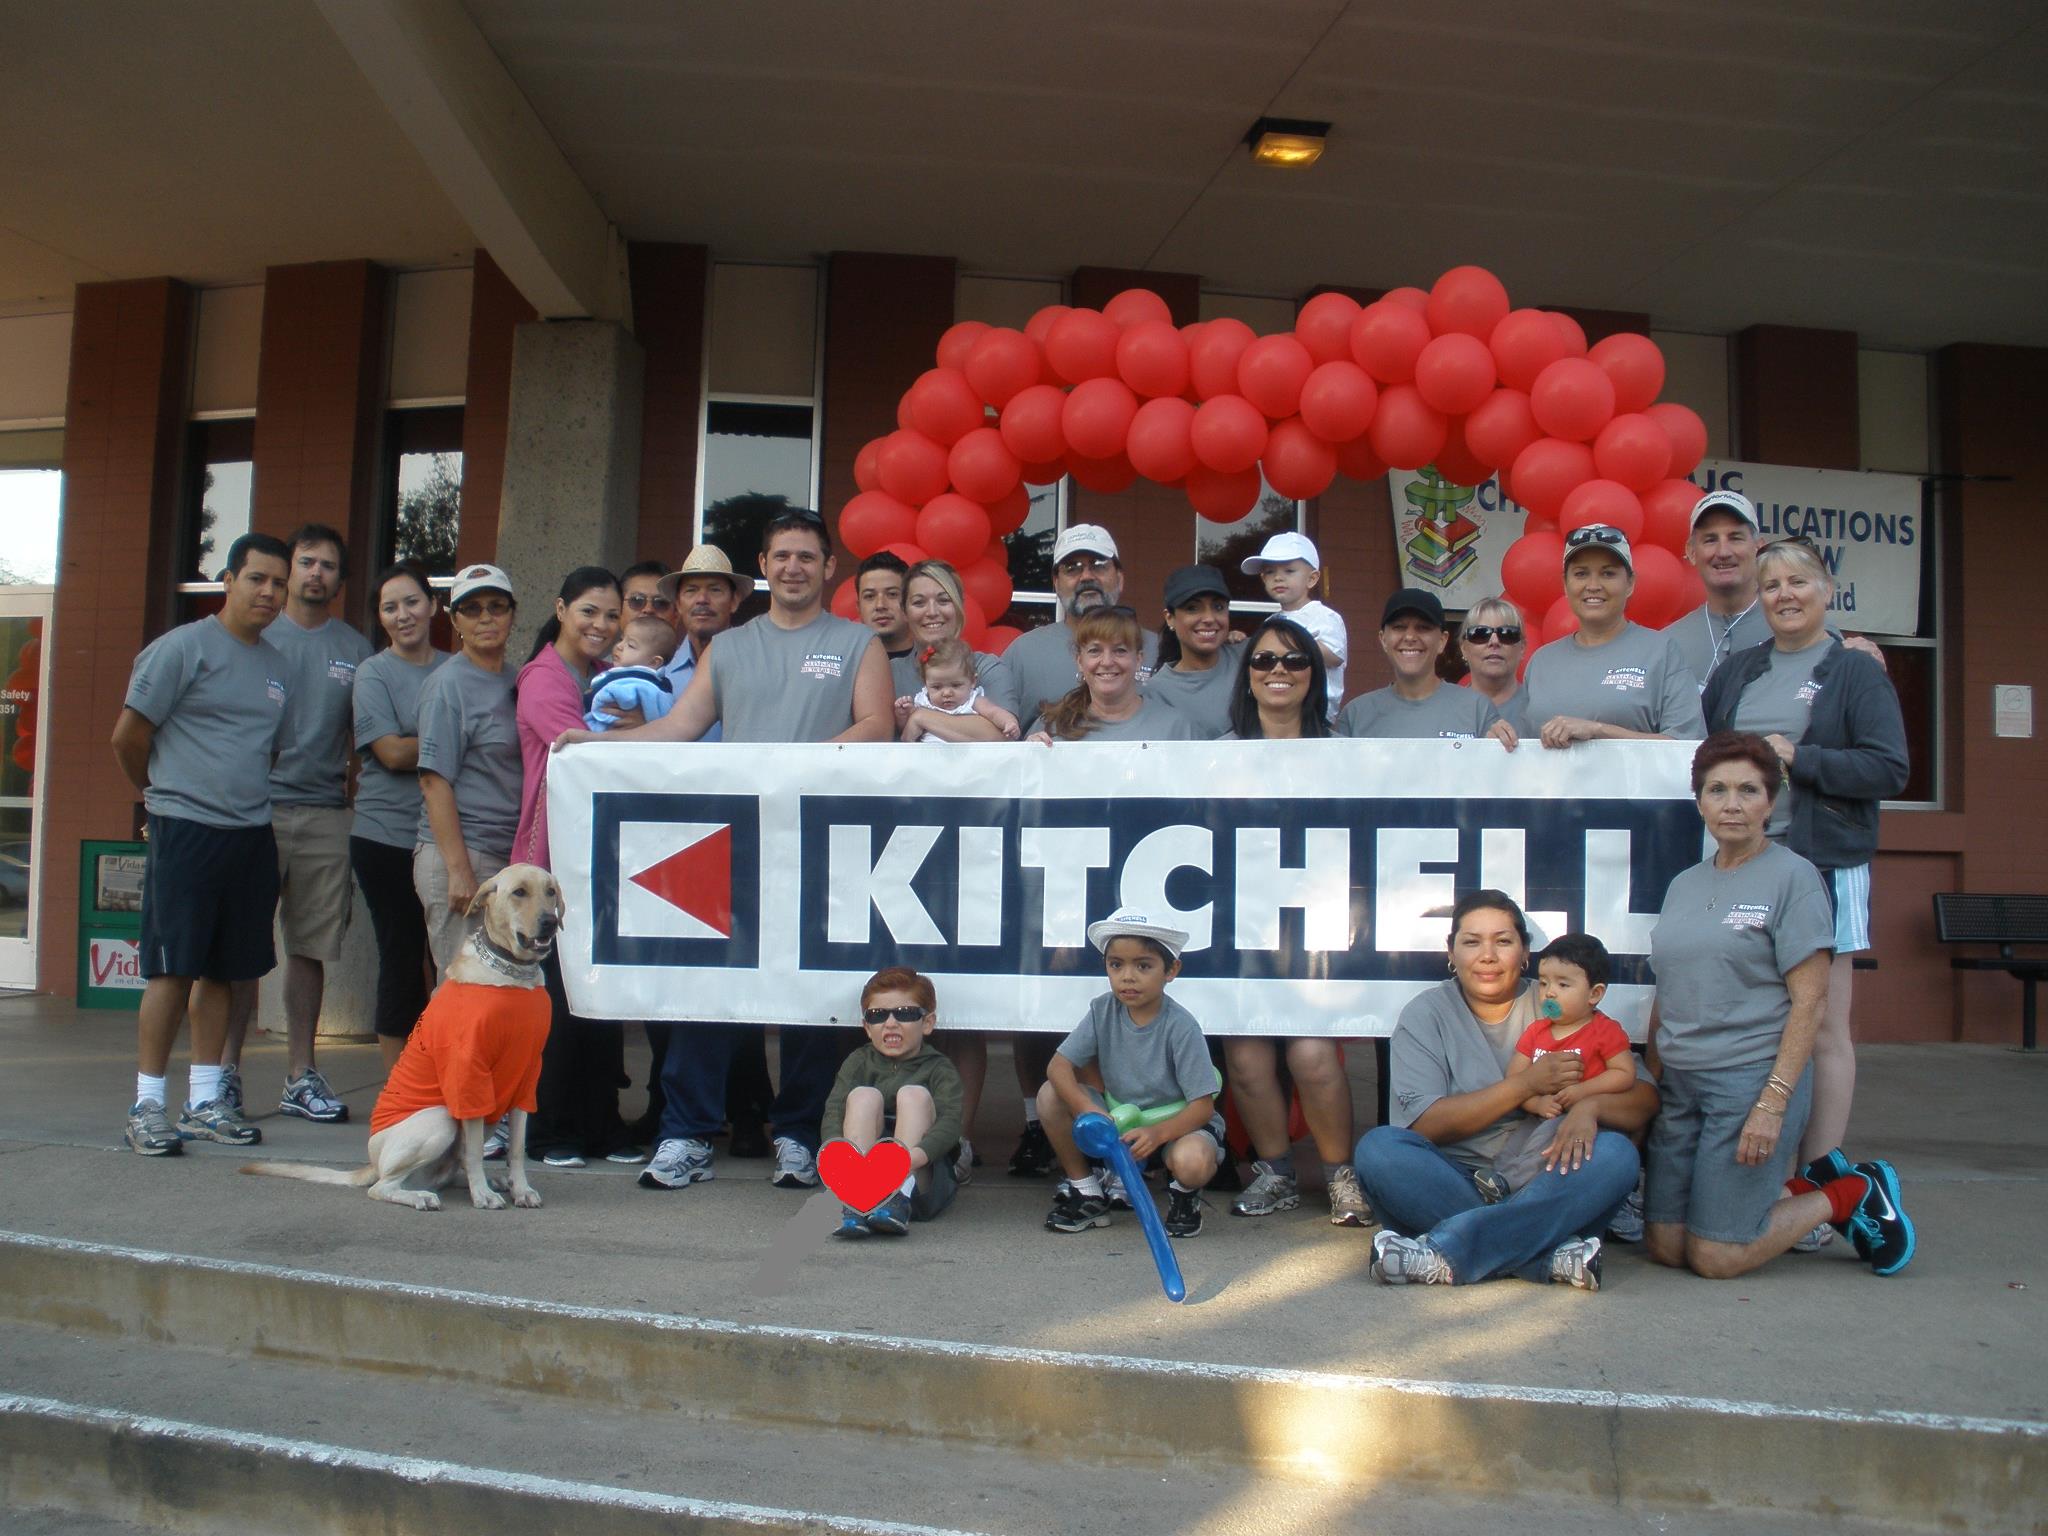 Kitchell Corporation